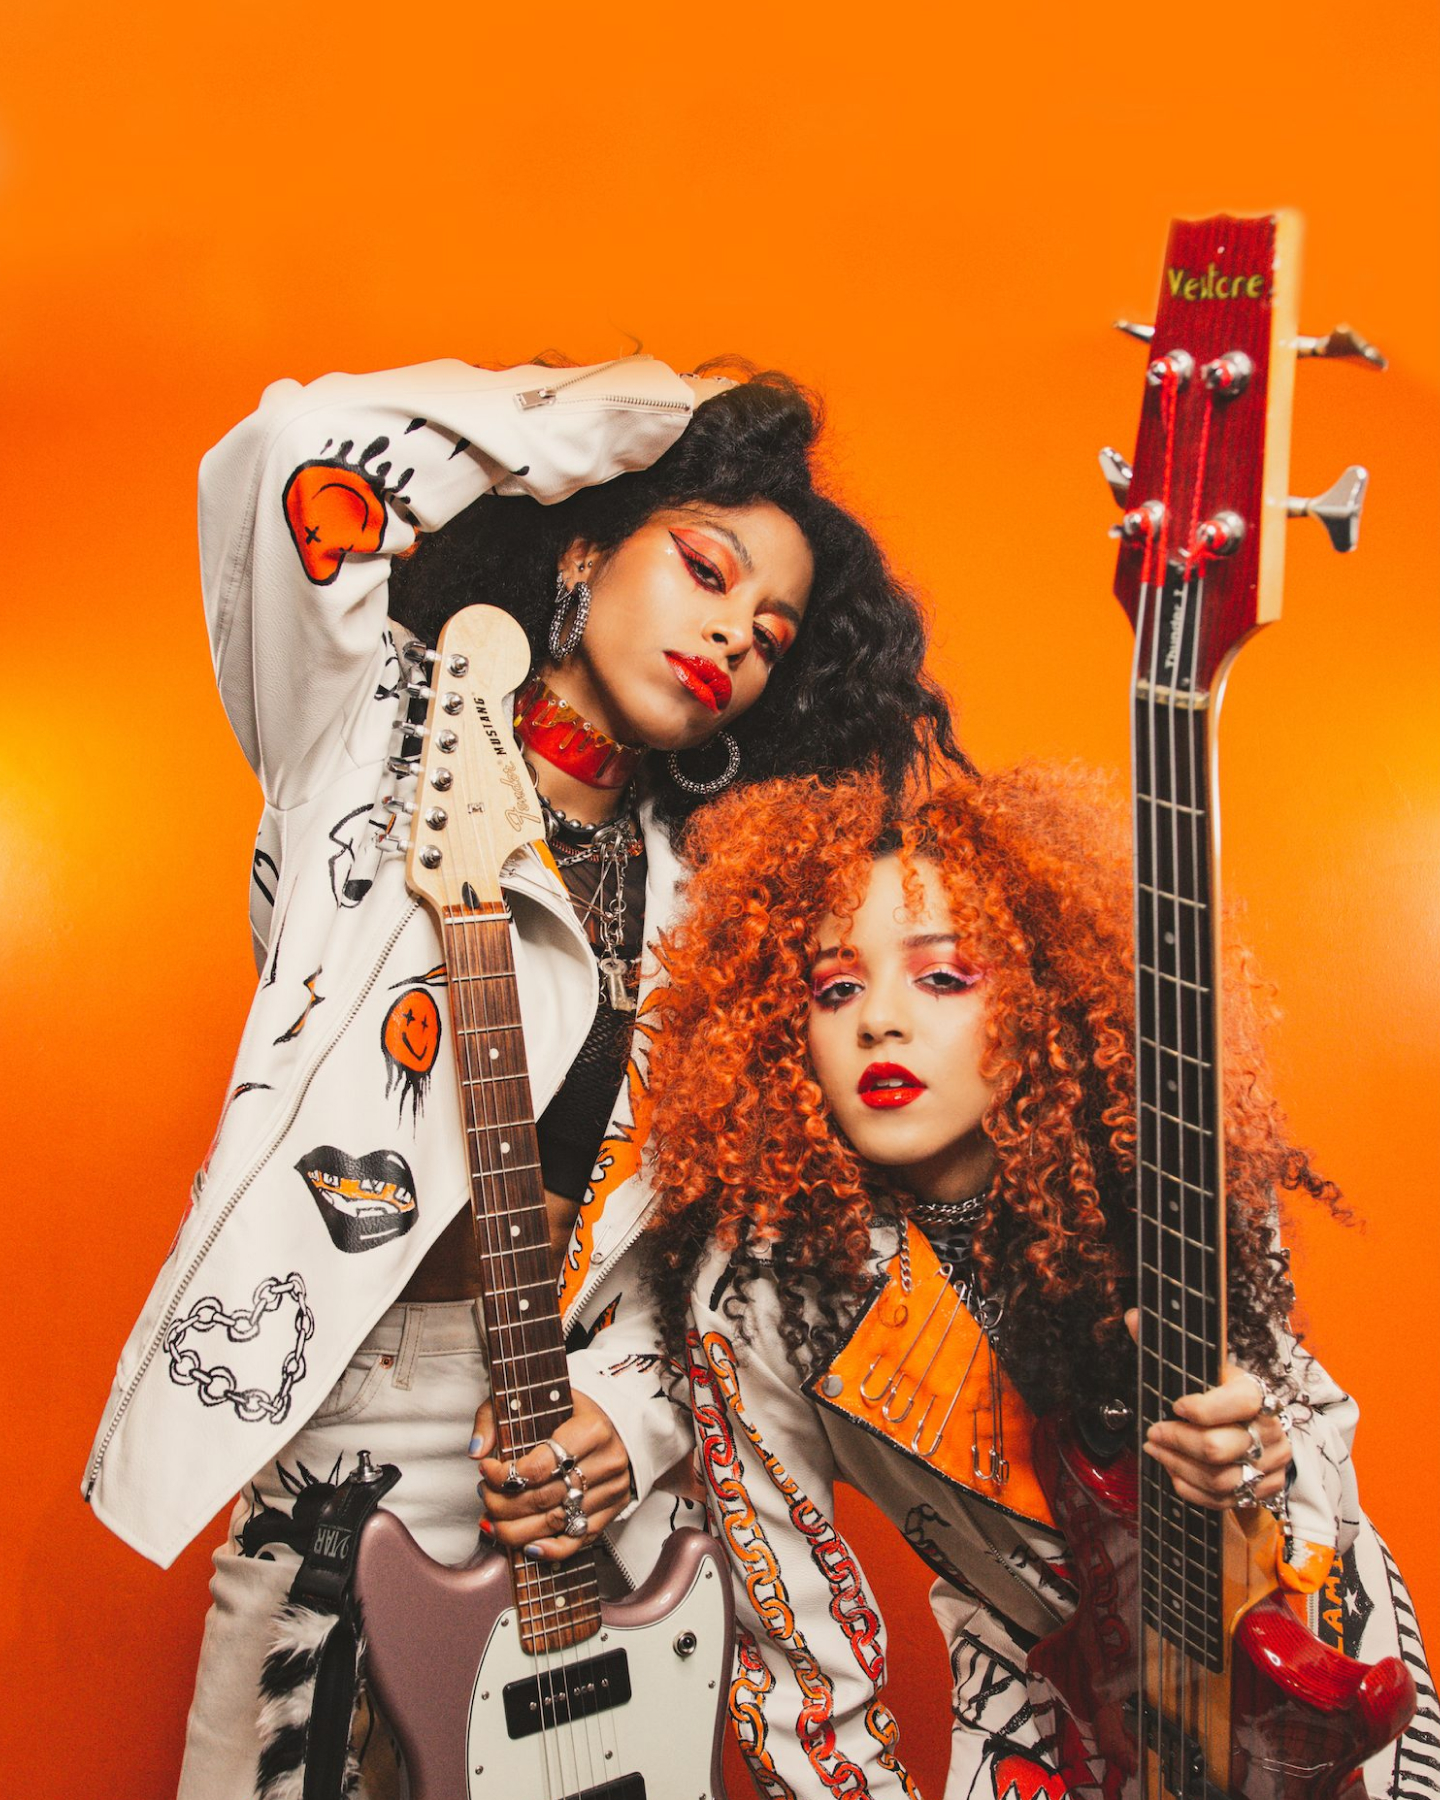 白いジャケットとオレンジのブラウスを着た2人のスタイリッシュなミュージシャンが、オレンジの背景でエレキギターを持ってポーズをとっている。